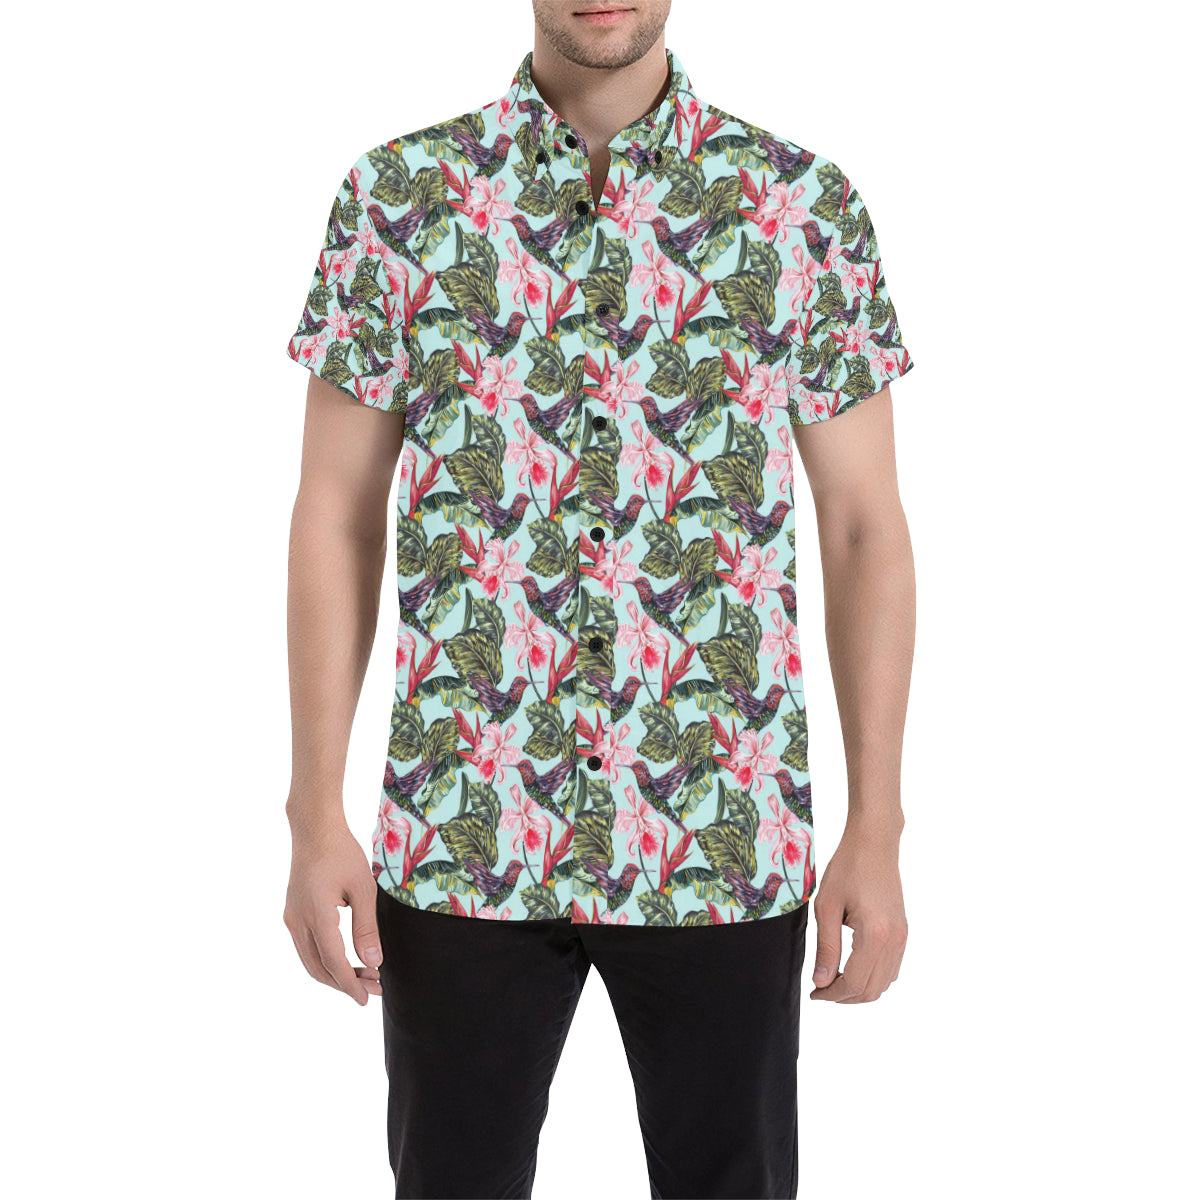 Hummingbird Cute Themed Print Men's Short Sleeve Button Up Shirt